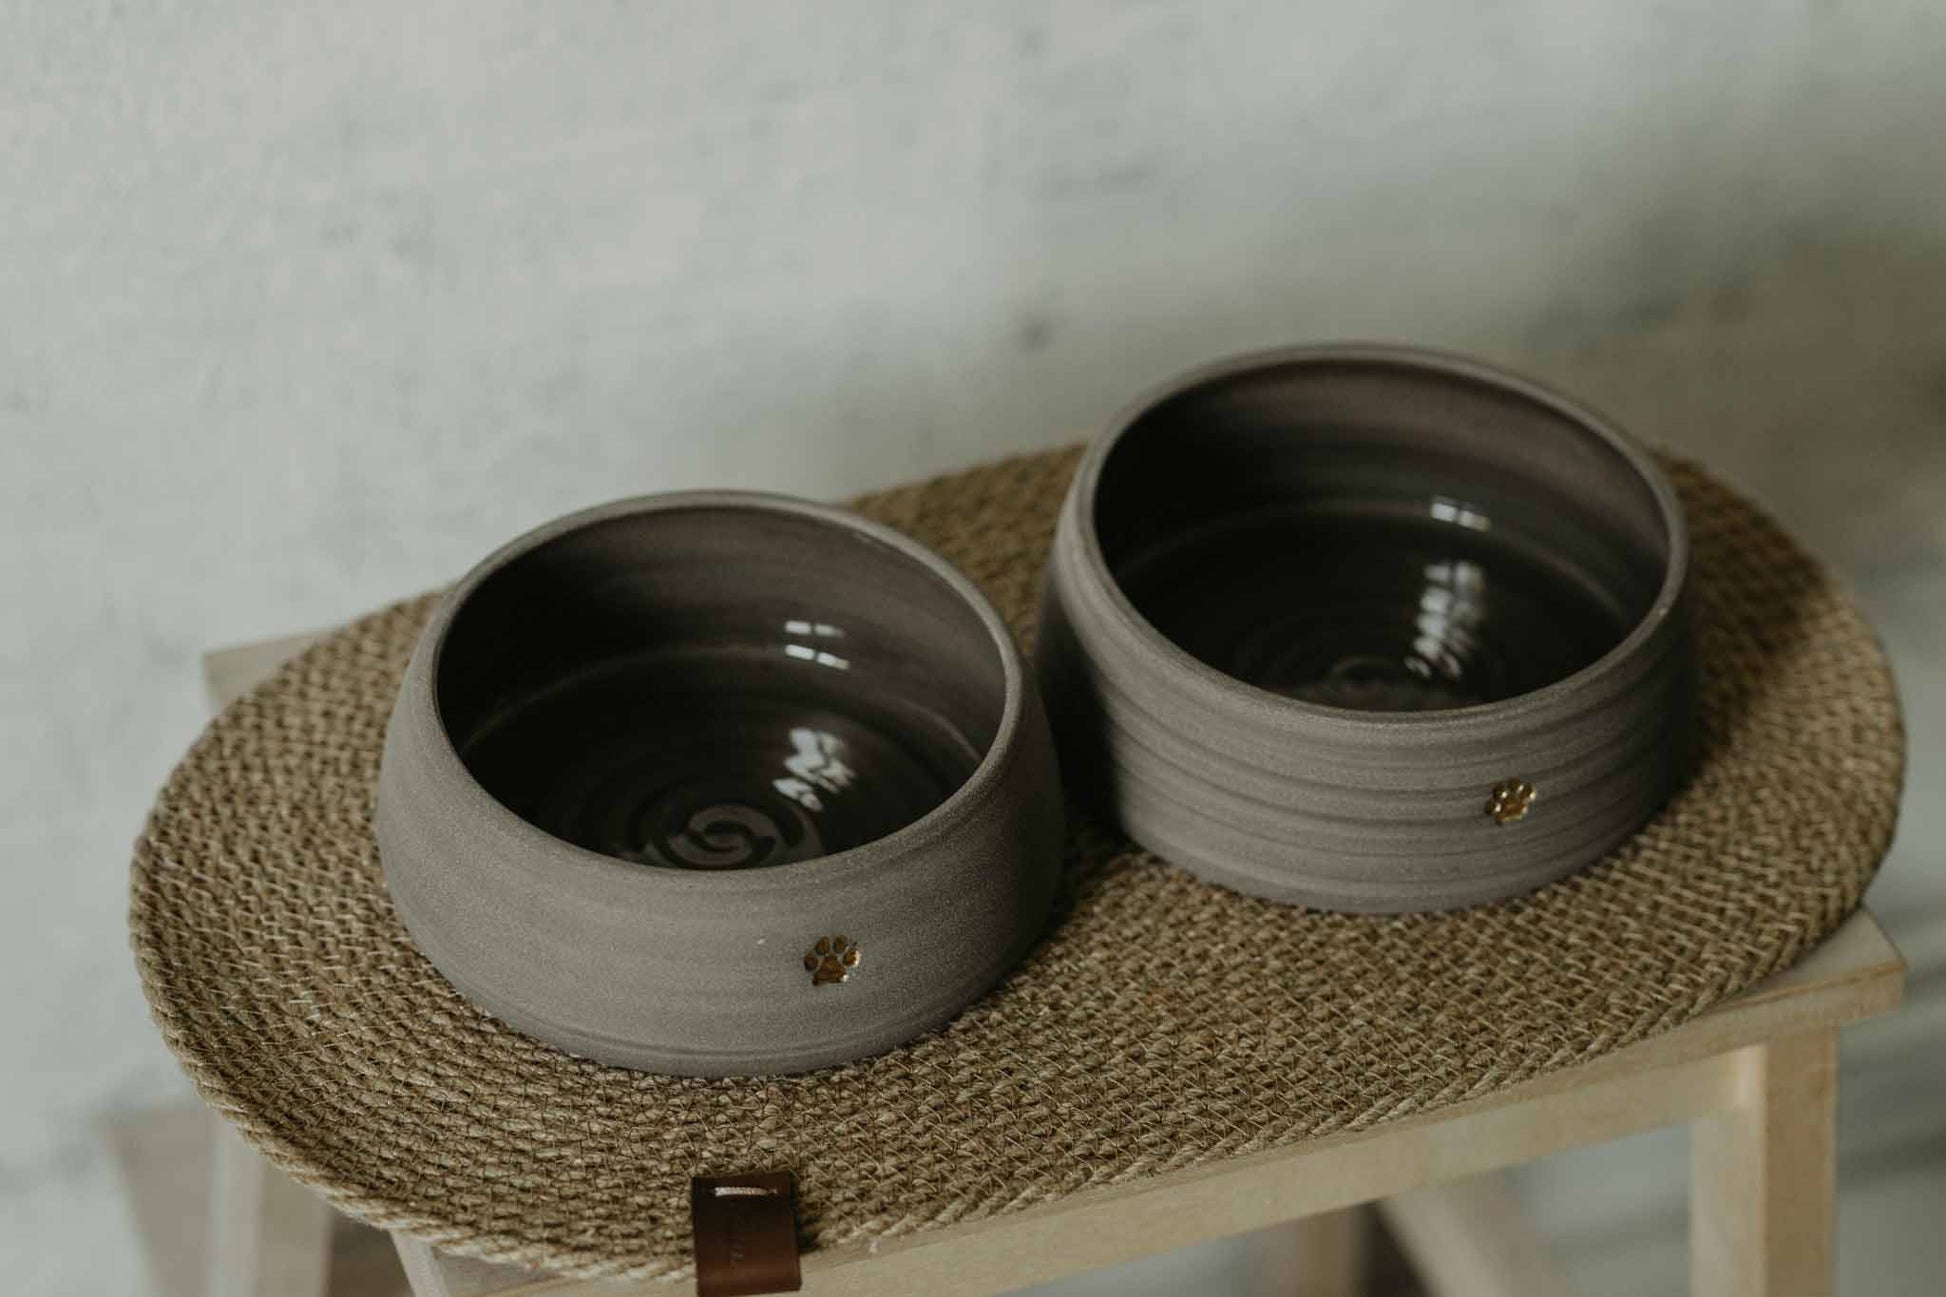 Premium ceramic pet bowls - 16 cm height, 5 cm diameter - durable and elegant design.